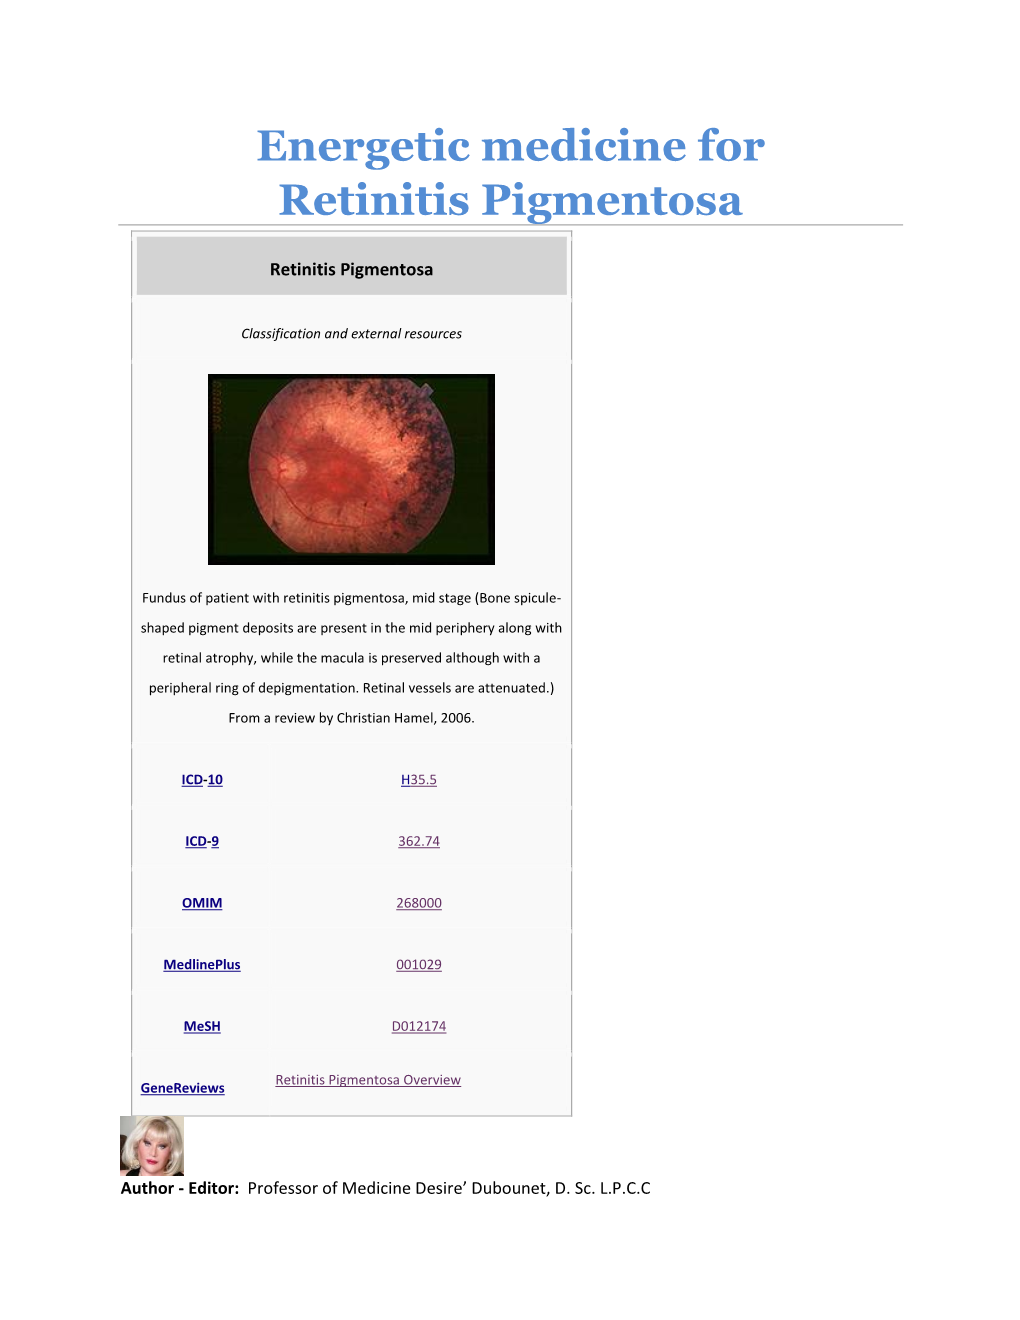 Energetic Medicine for Retinitis Pigmentosa